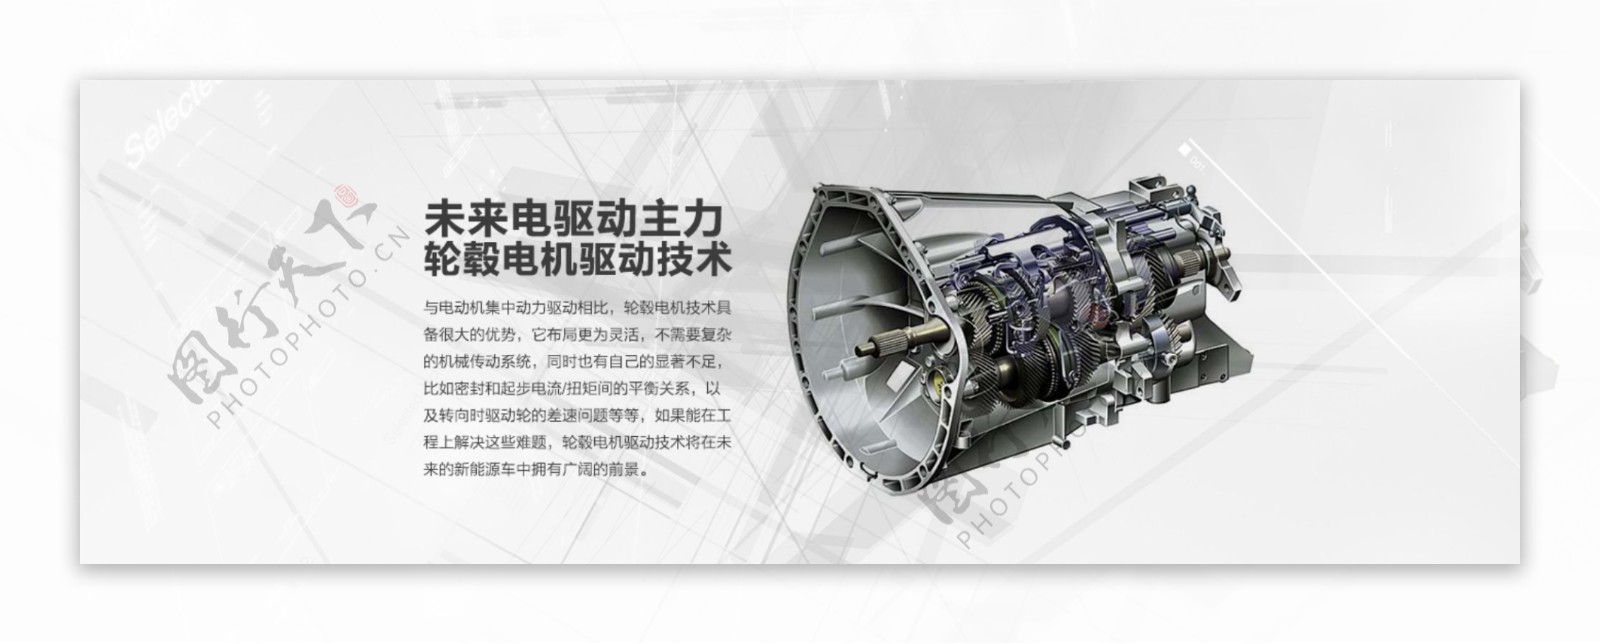 中国永磁电机未来电机动力